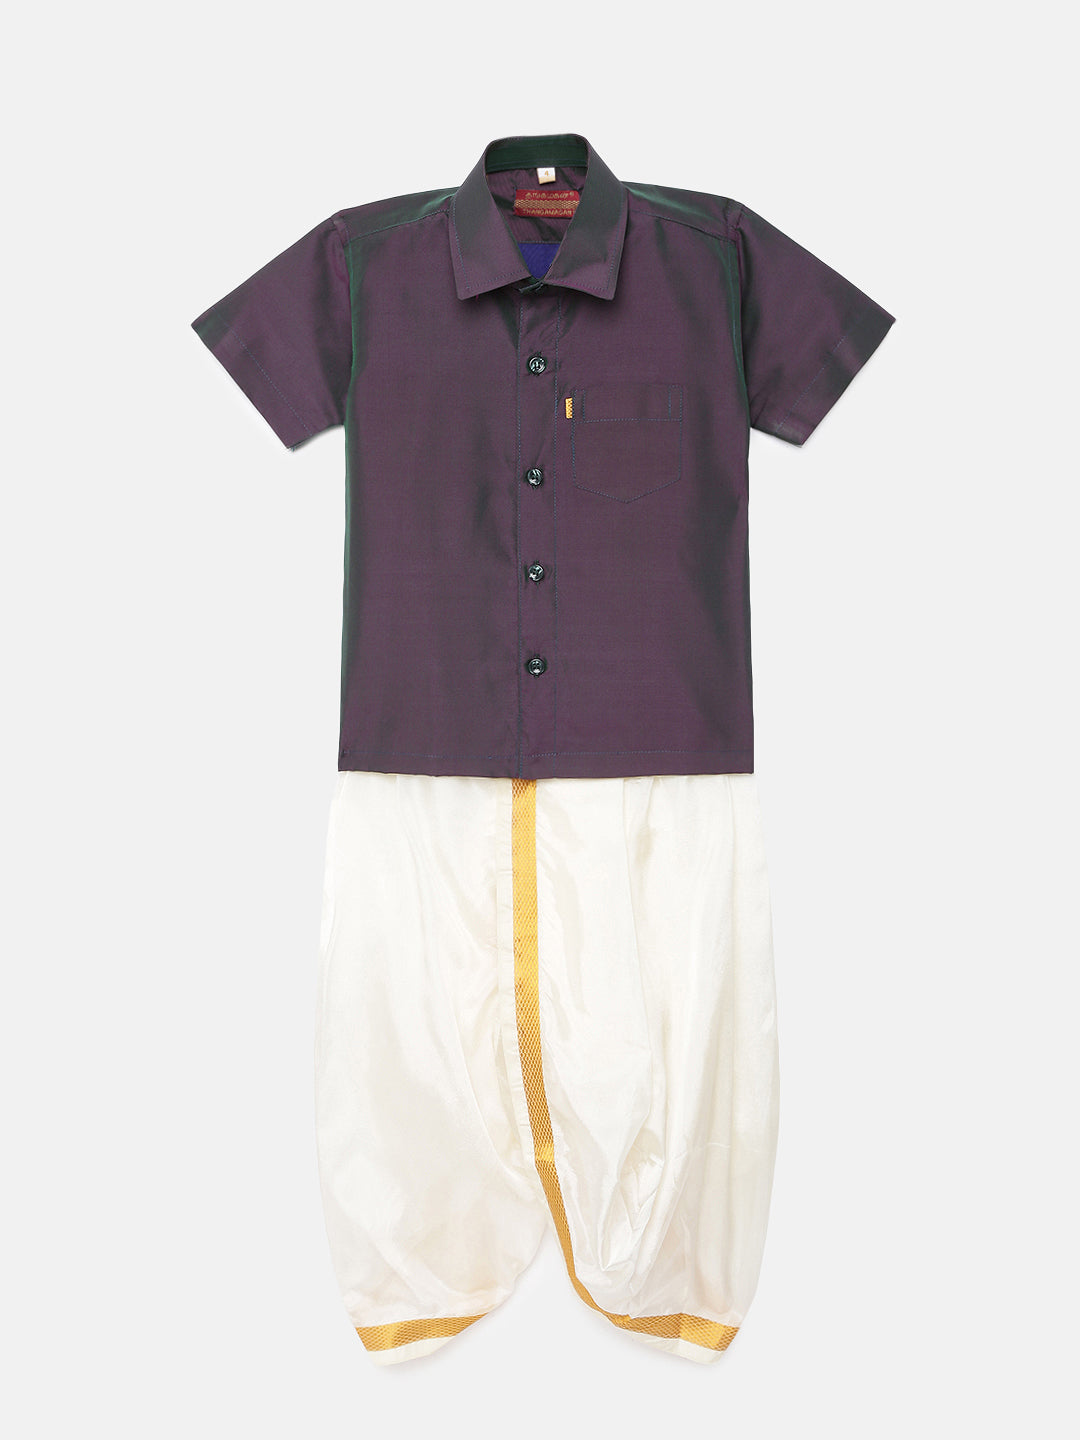 34. Boys Panjagajam & Shirt Set